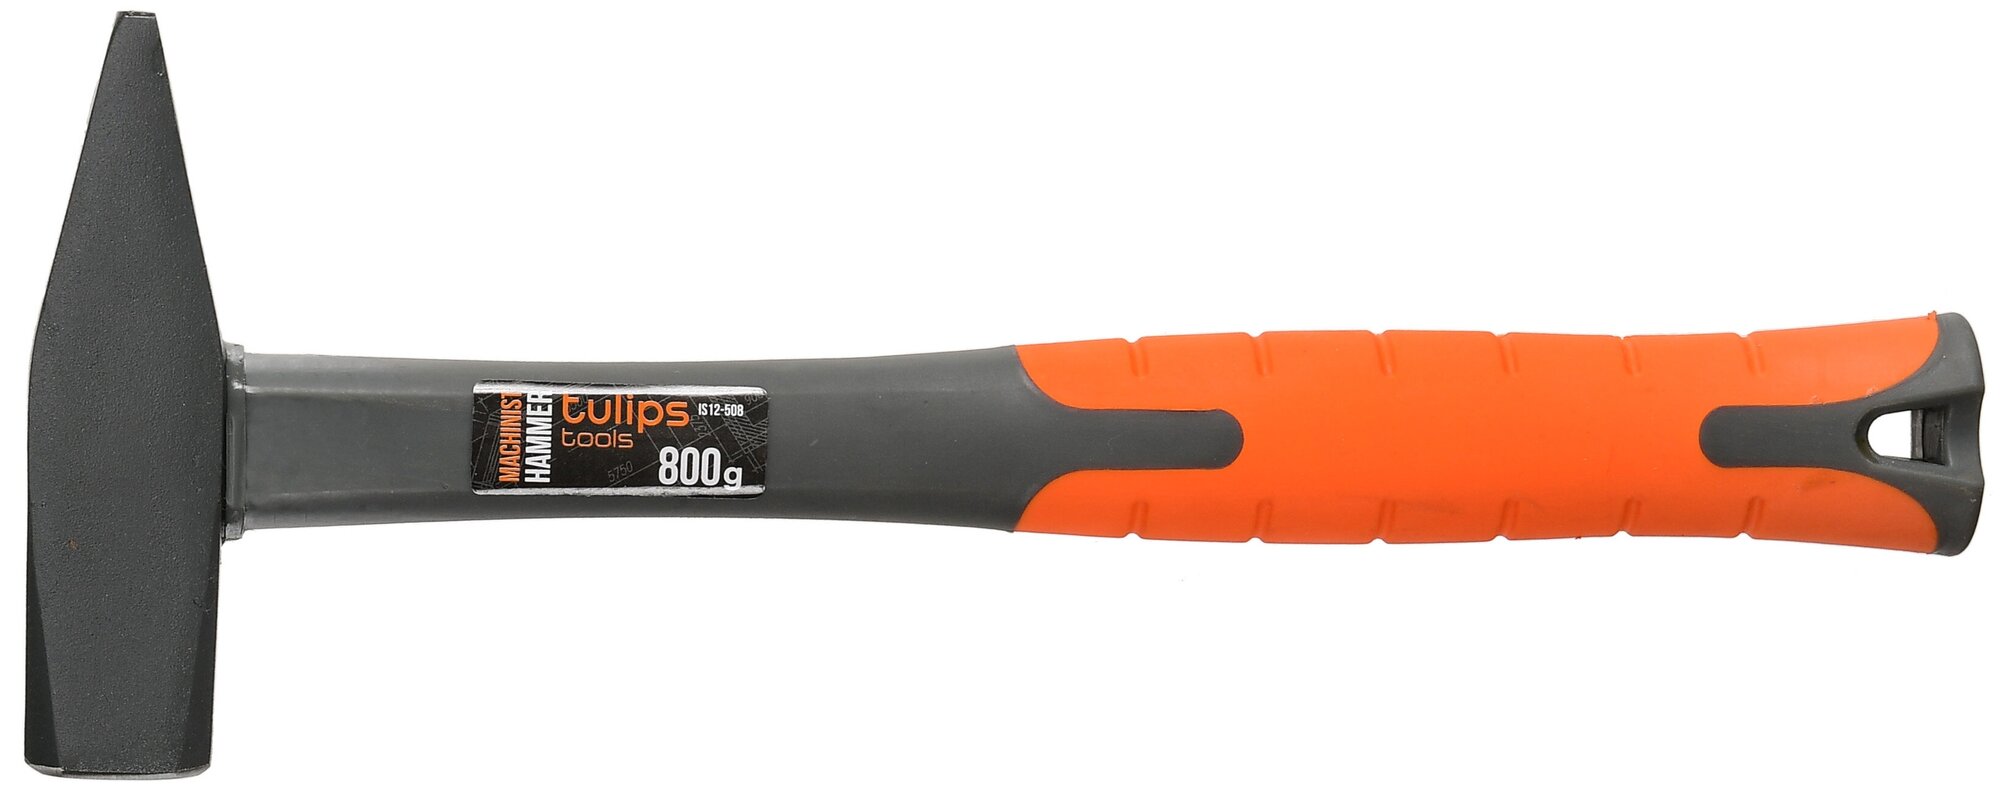 Молоток слесарный Tulips tools IS12-508 800г с фибергласовой рукоятью.